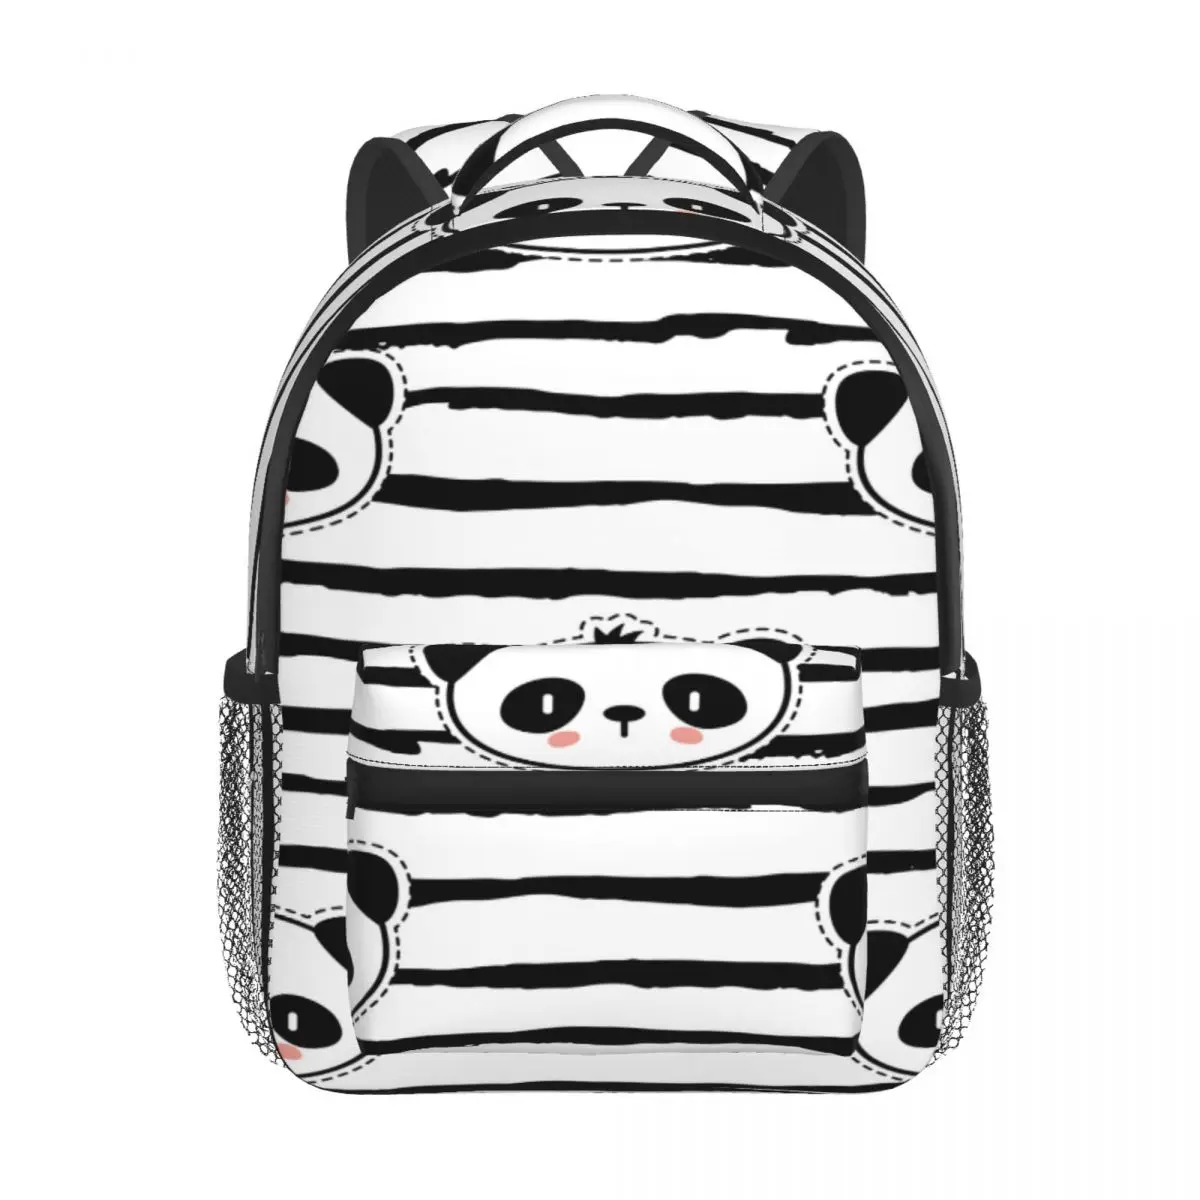 Black And White Panda Bear Strip Pattern Kids Backpack Toddler School Bag Kindergarten Mochila for Boys Girls 2-5 Years